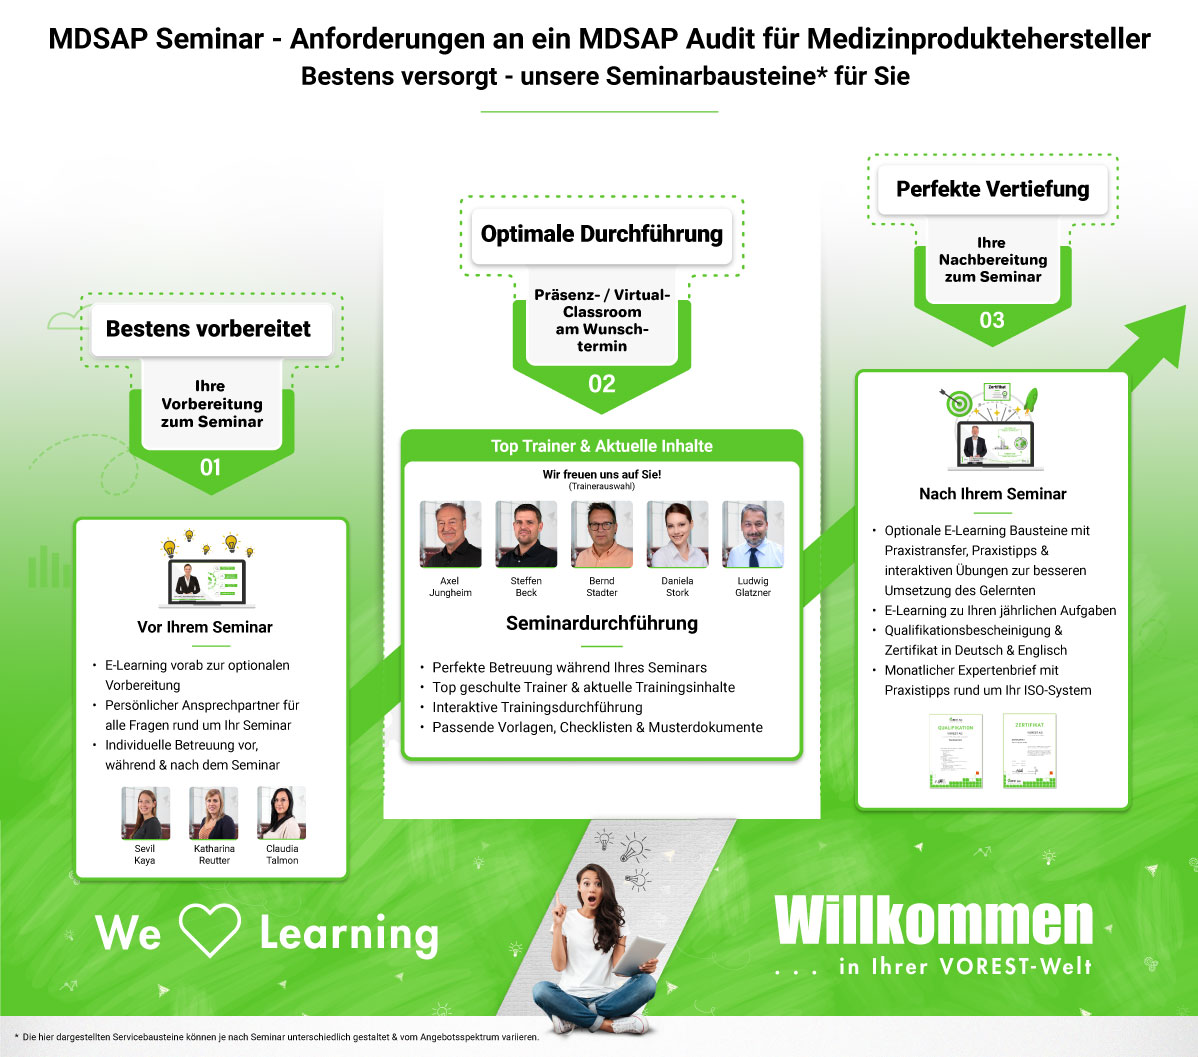 MDSAP Seminar - Anforderungen an ein MDSAP Audit für Medizinproduktehersteller